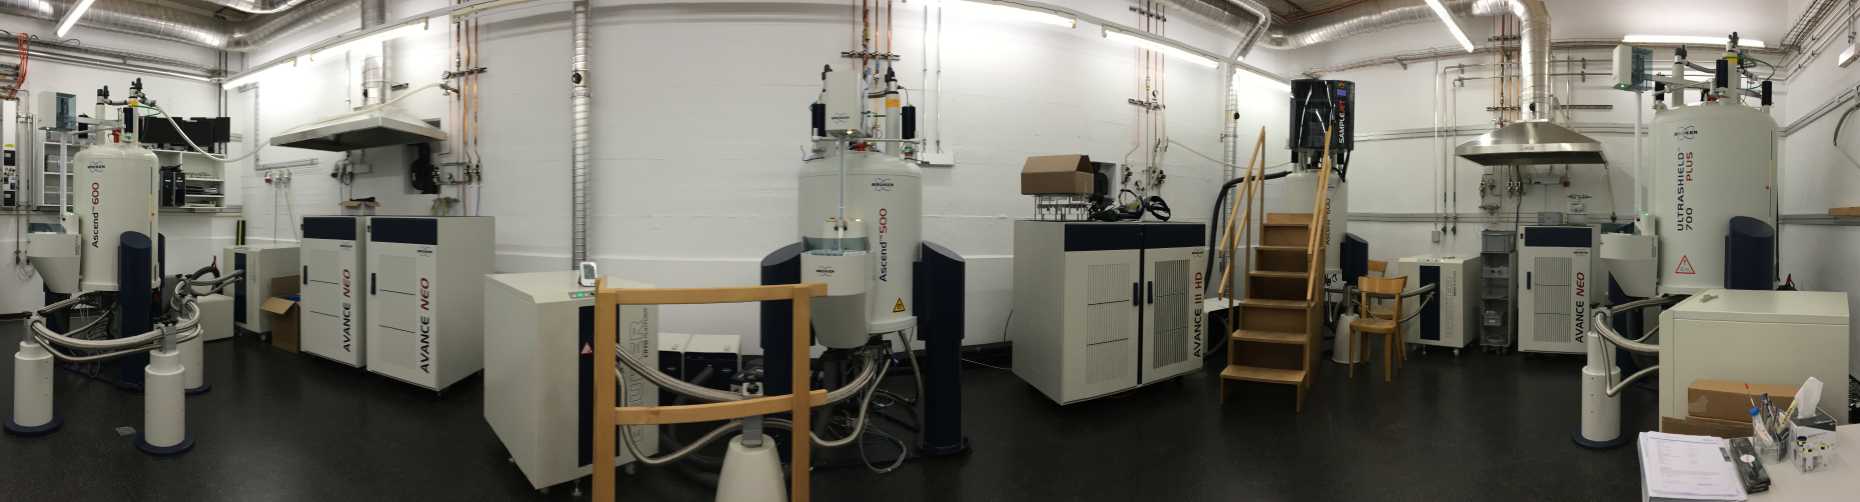 NMR Lab B1.1 panorama